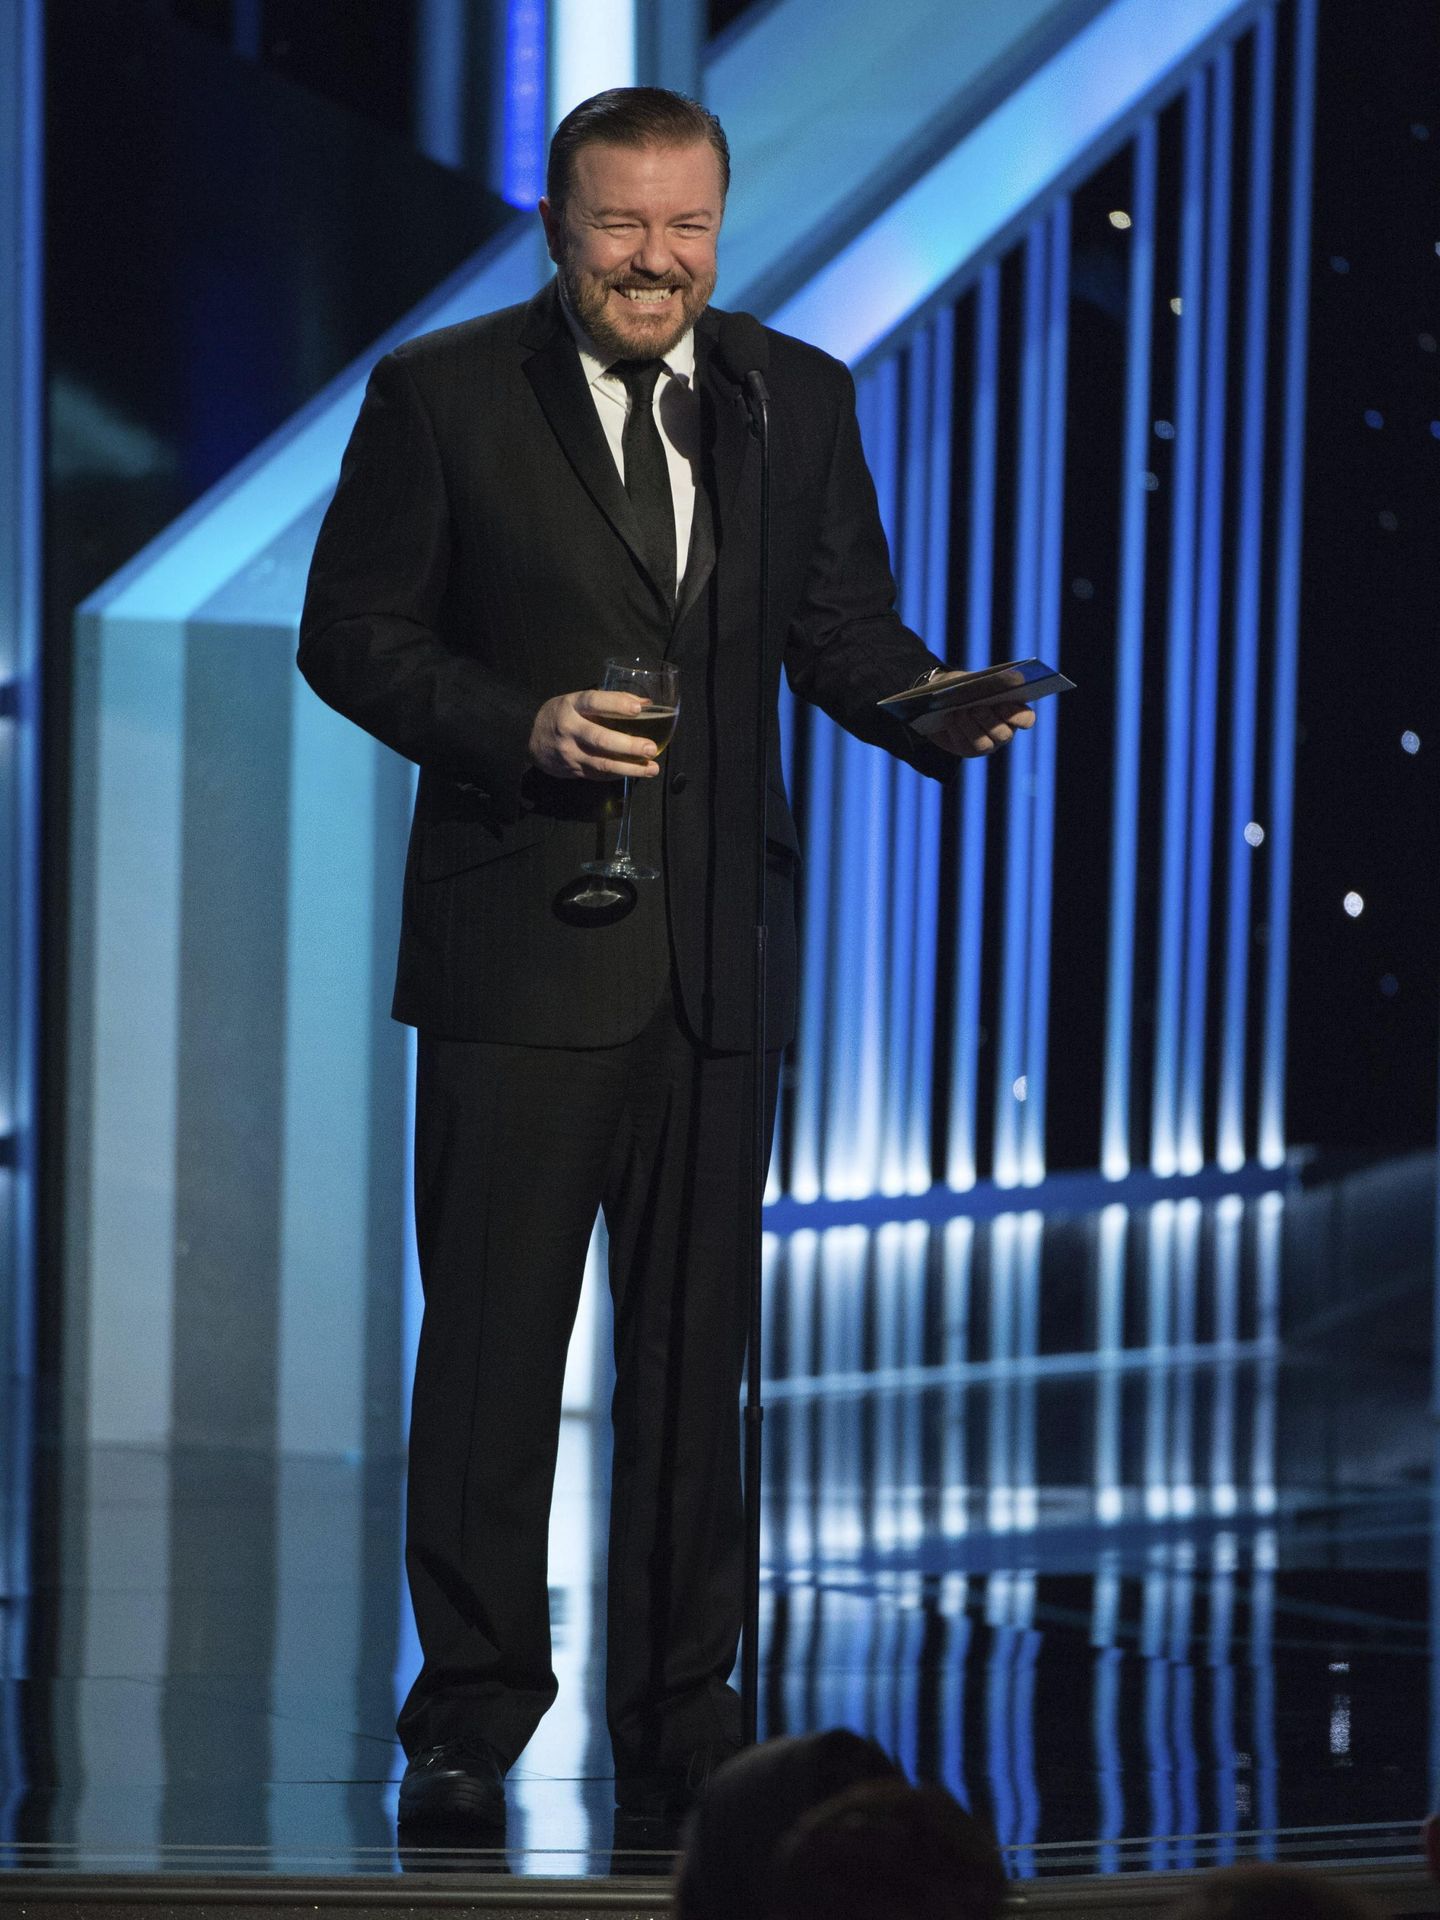 El polémico Ricky Gervais ha presentado los Globos de Oro en alguna ocasión. (EFE/Hfpa)